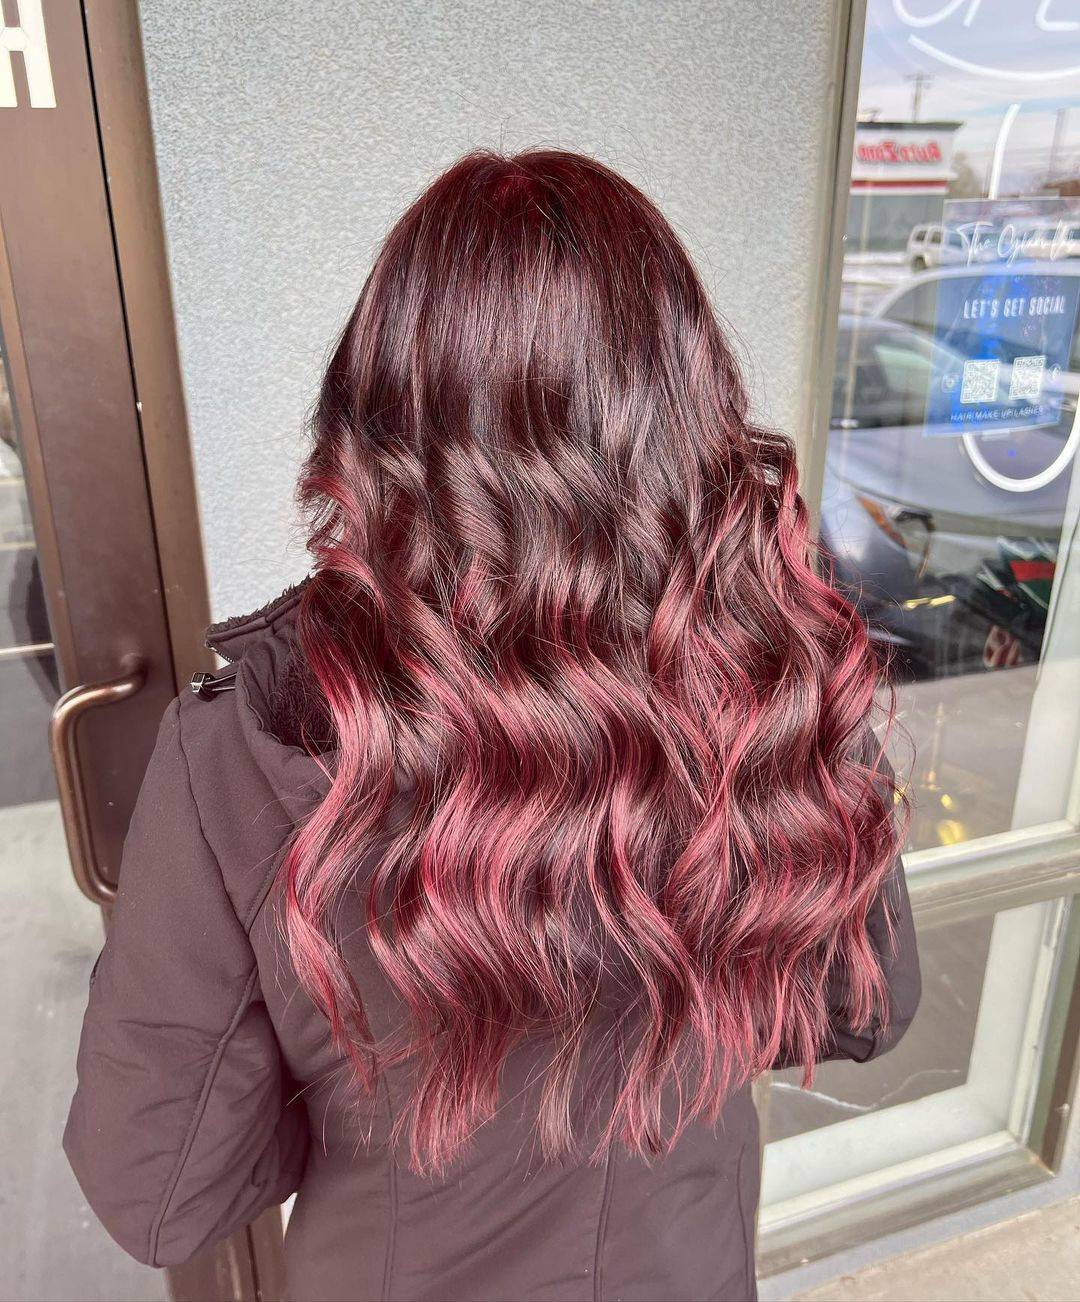 Burgundy hair color 222 burgundy hair color | burgundy hair color for women | burgundy hair color highlights Burgundy Hair Color